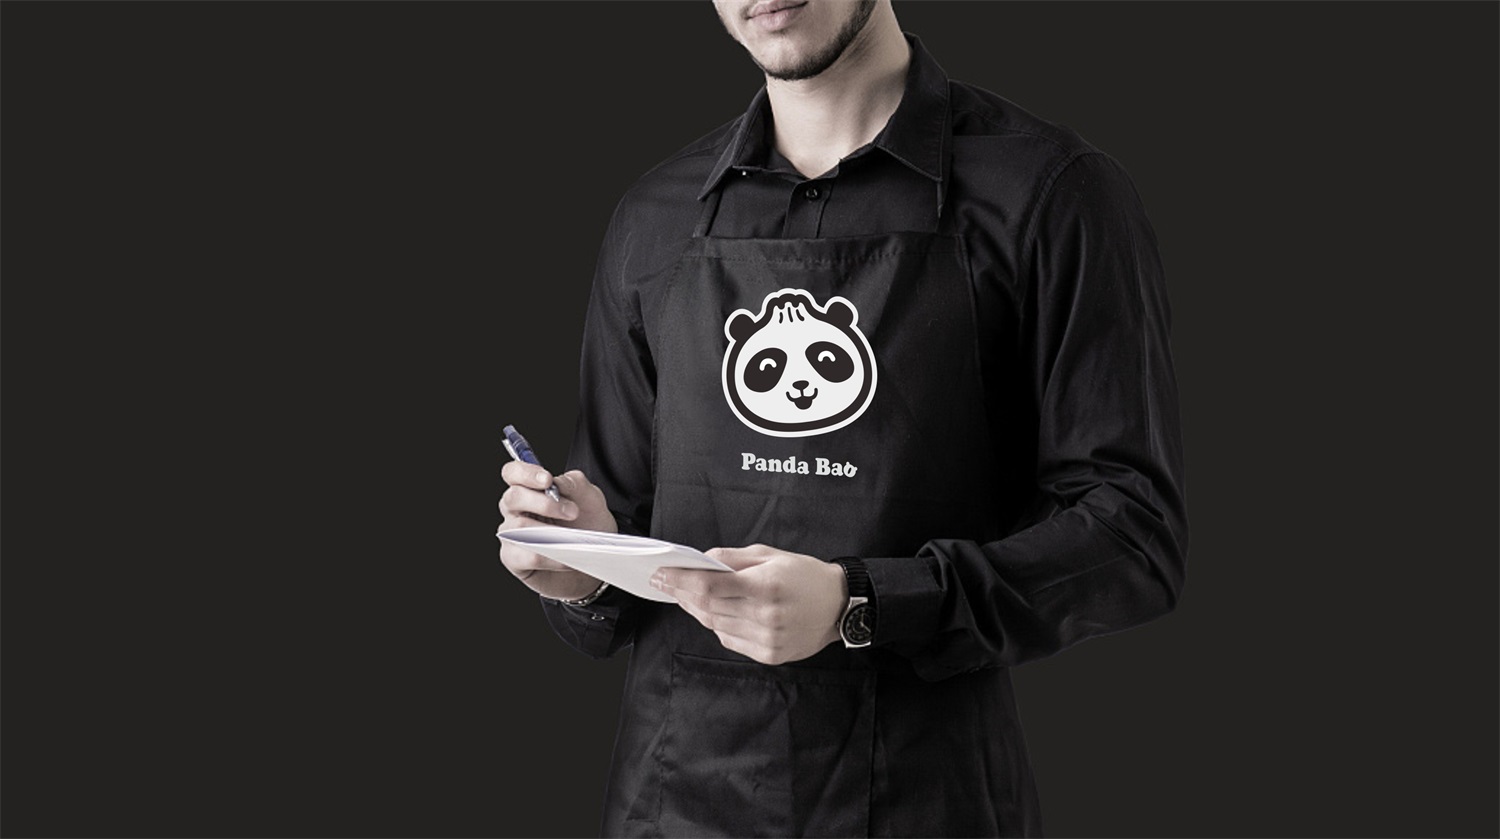 水煎包连锁餐饮品牌Panda Bao工作服设计